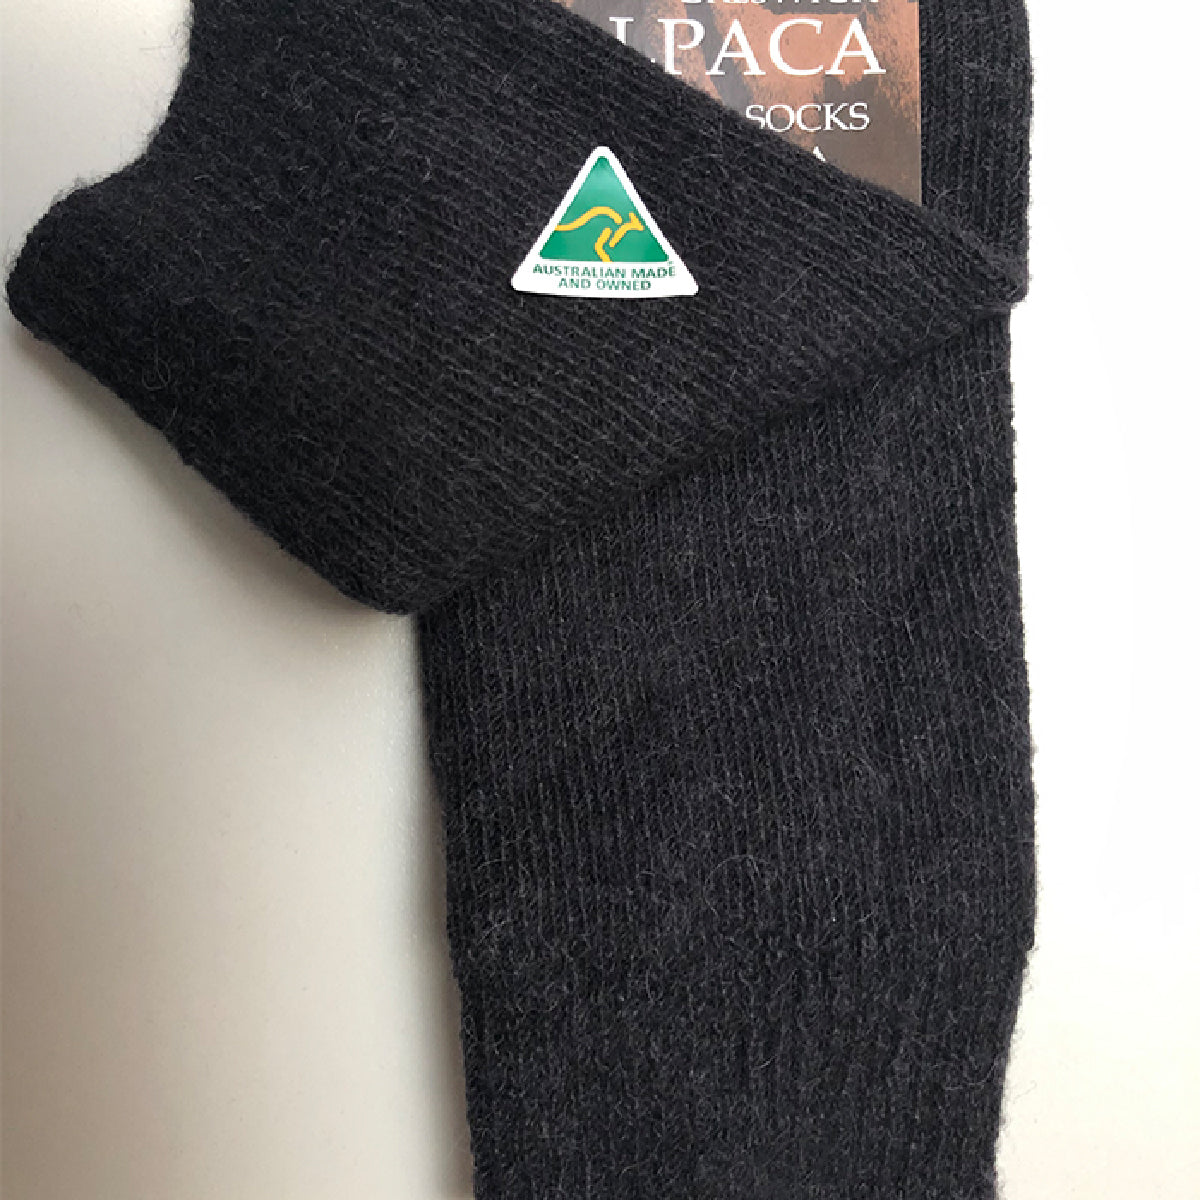 Alpaca Socks Plain Knit